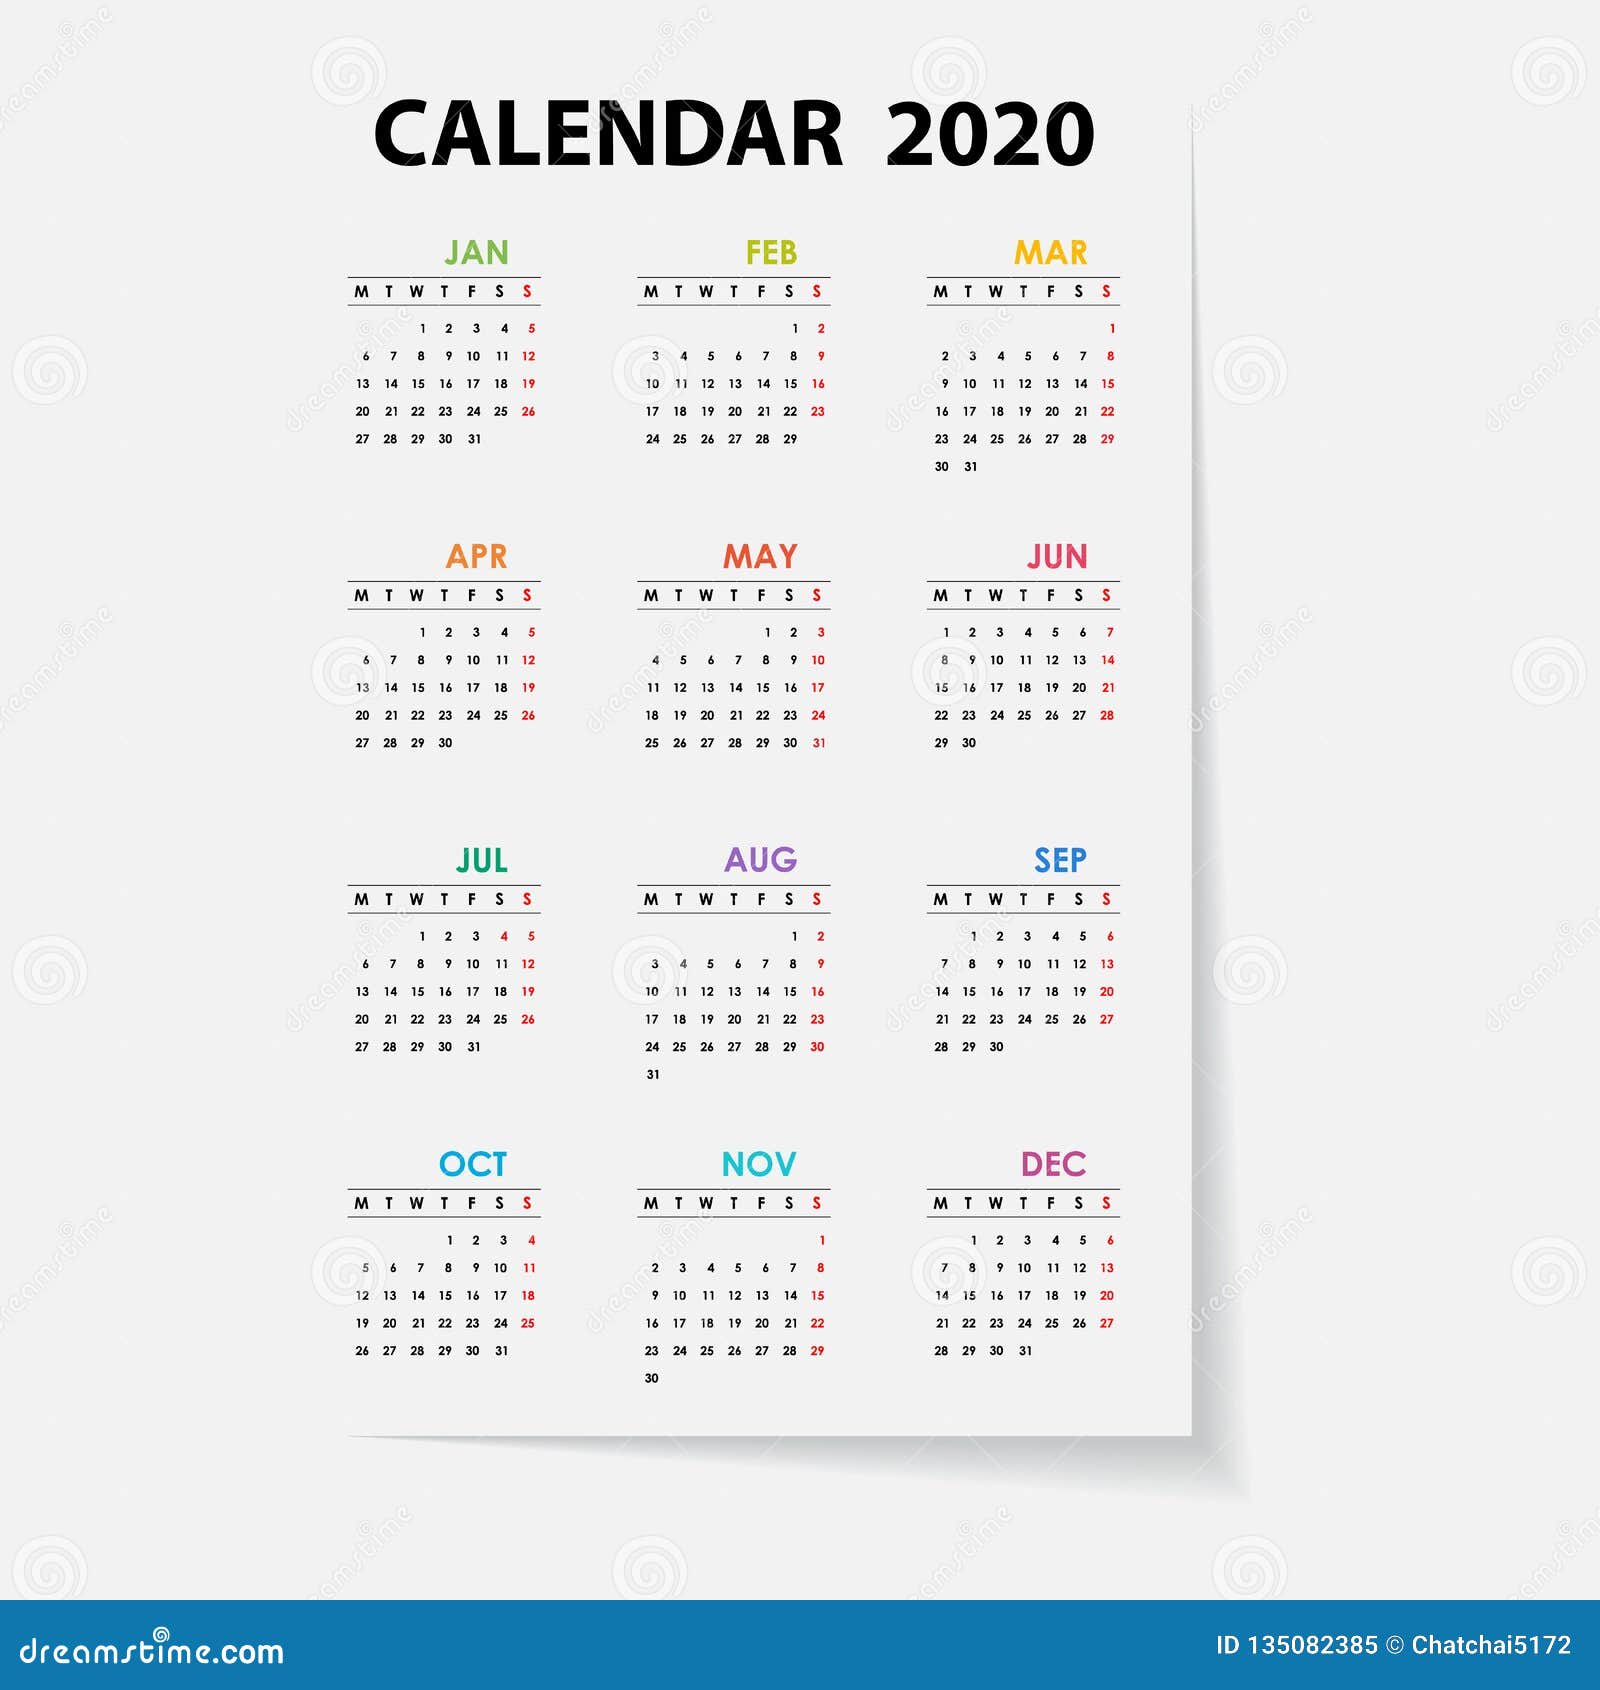 2020 Calendar Templatecalendar 2020 Set Of 12 Monthsyearly Calendar